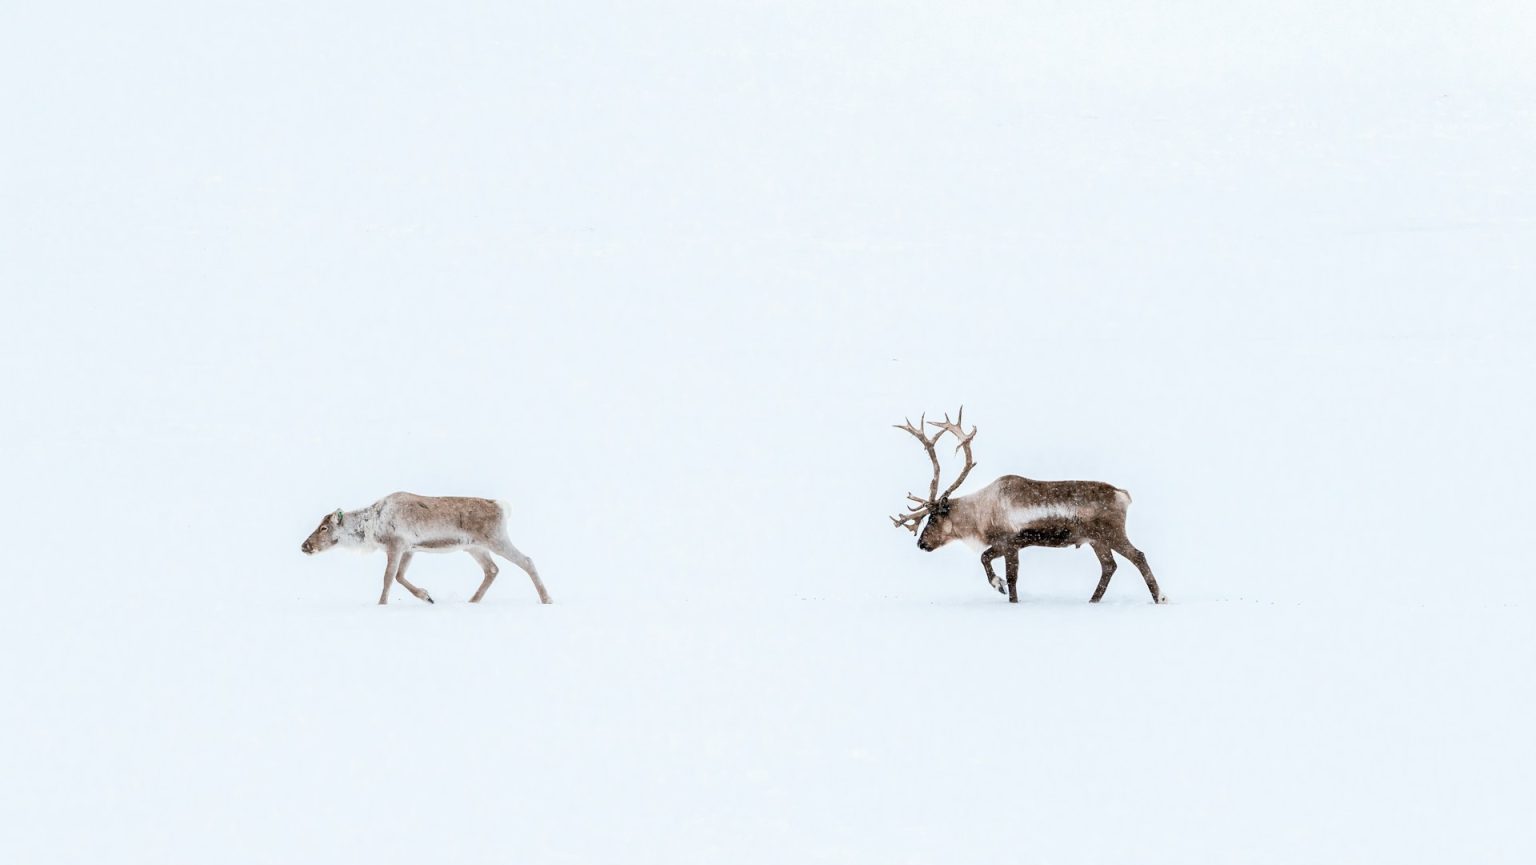 Two reindeer walking across a snowy field.